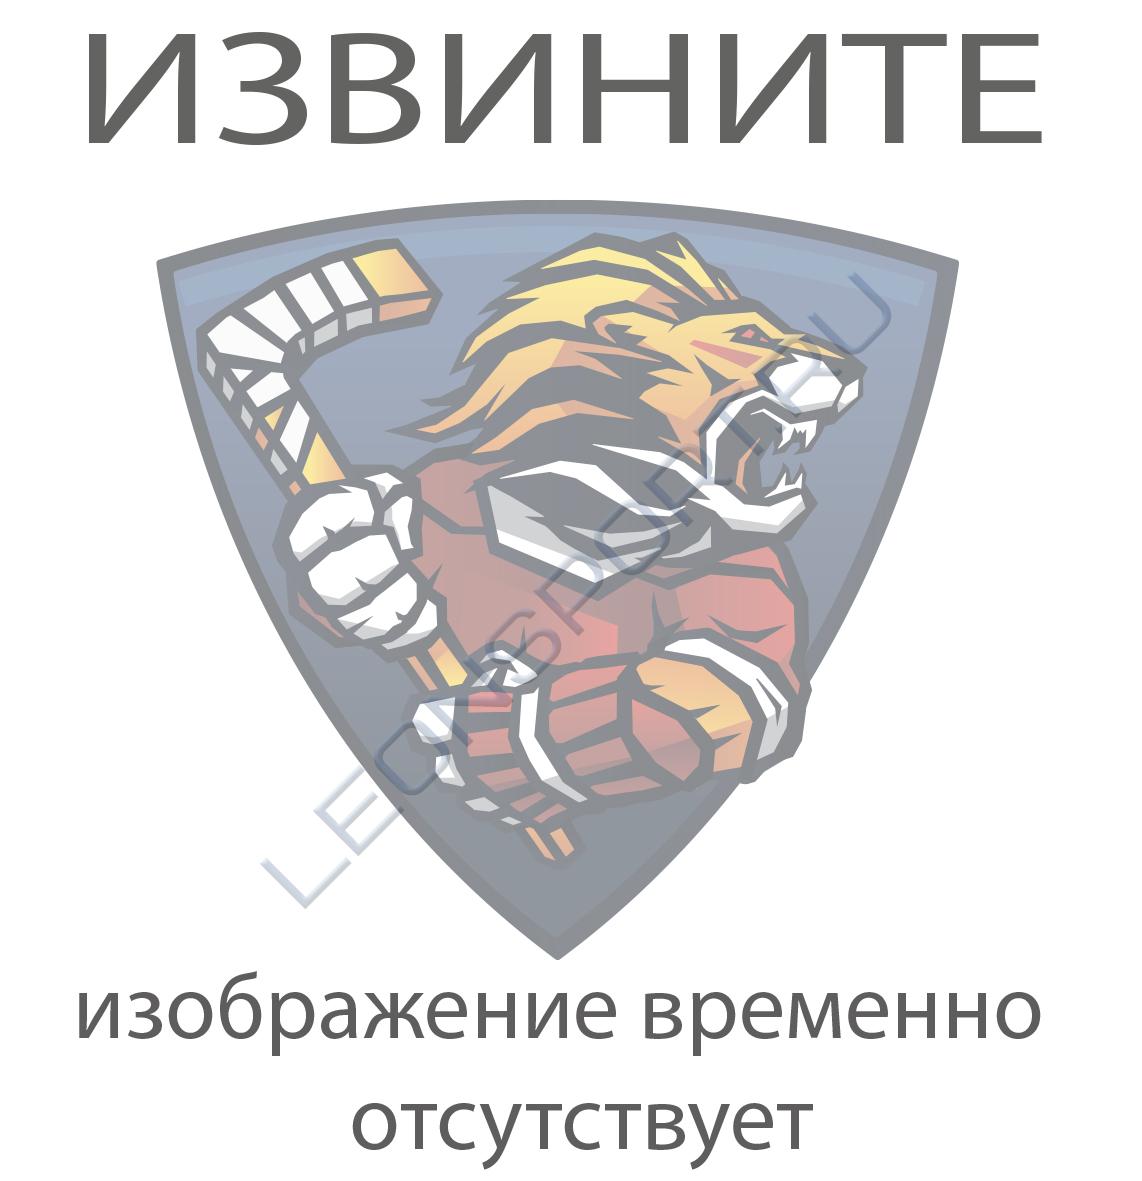 Мешок клубный спортивный с логотипом ХК ЦСКА